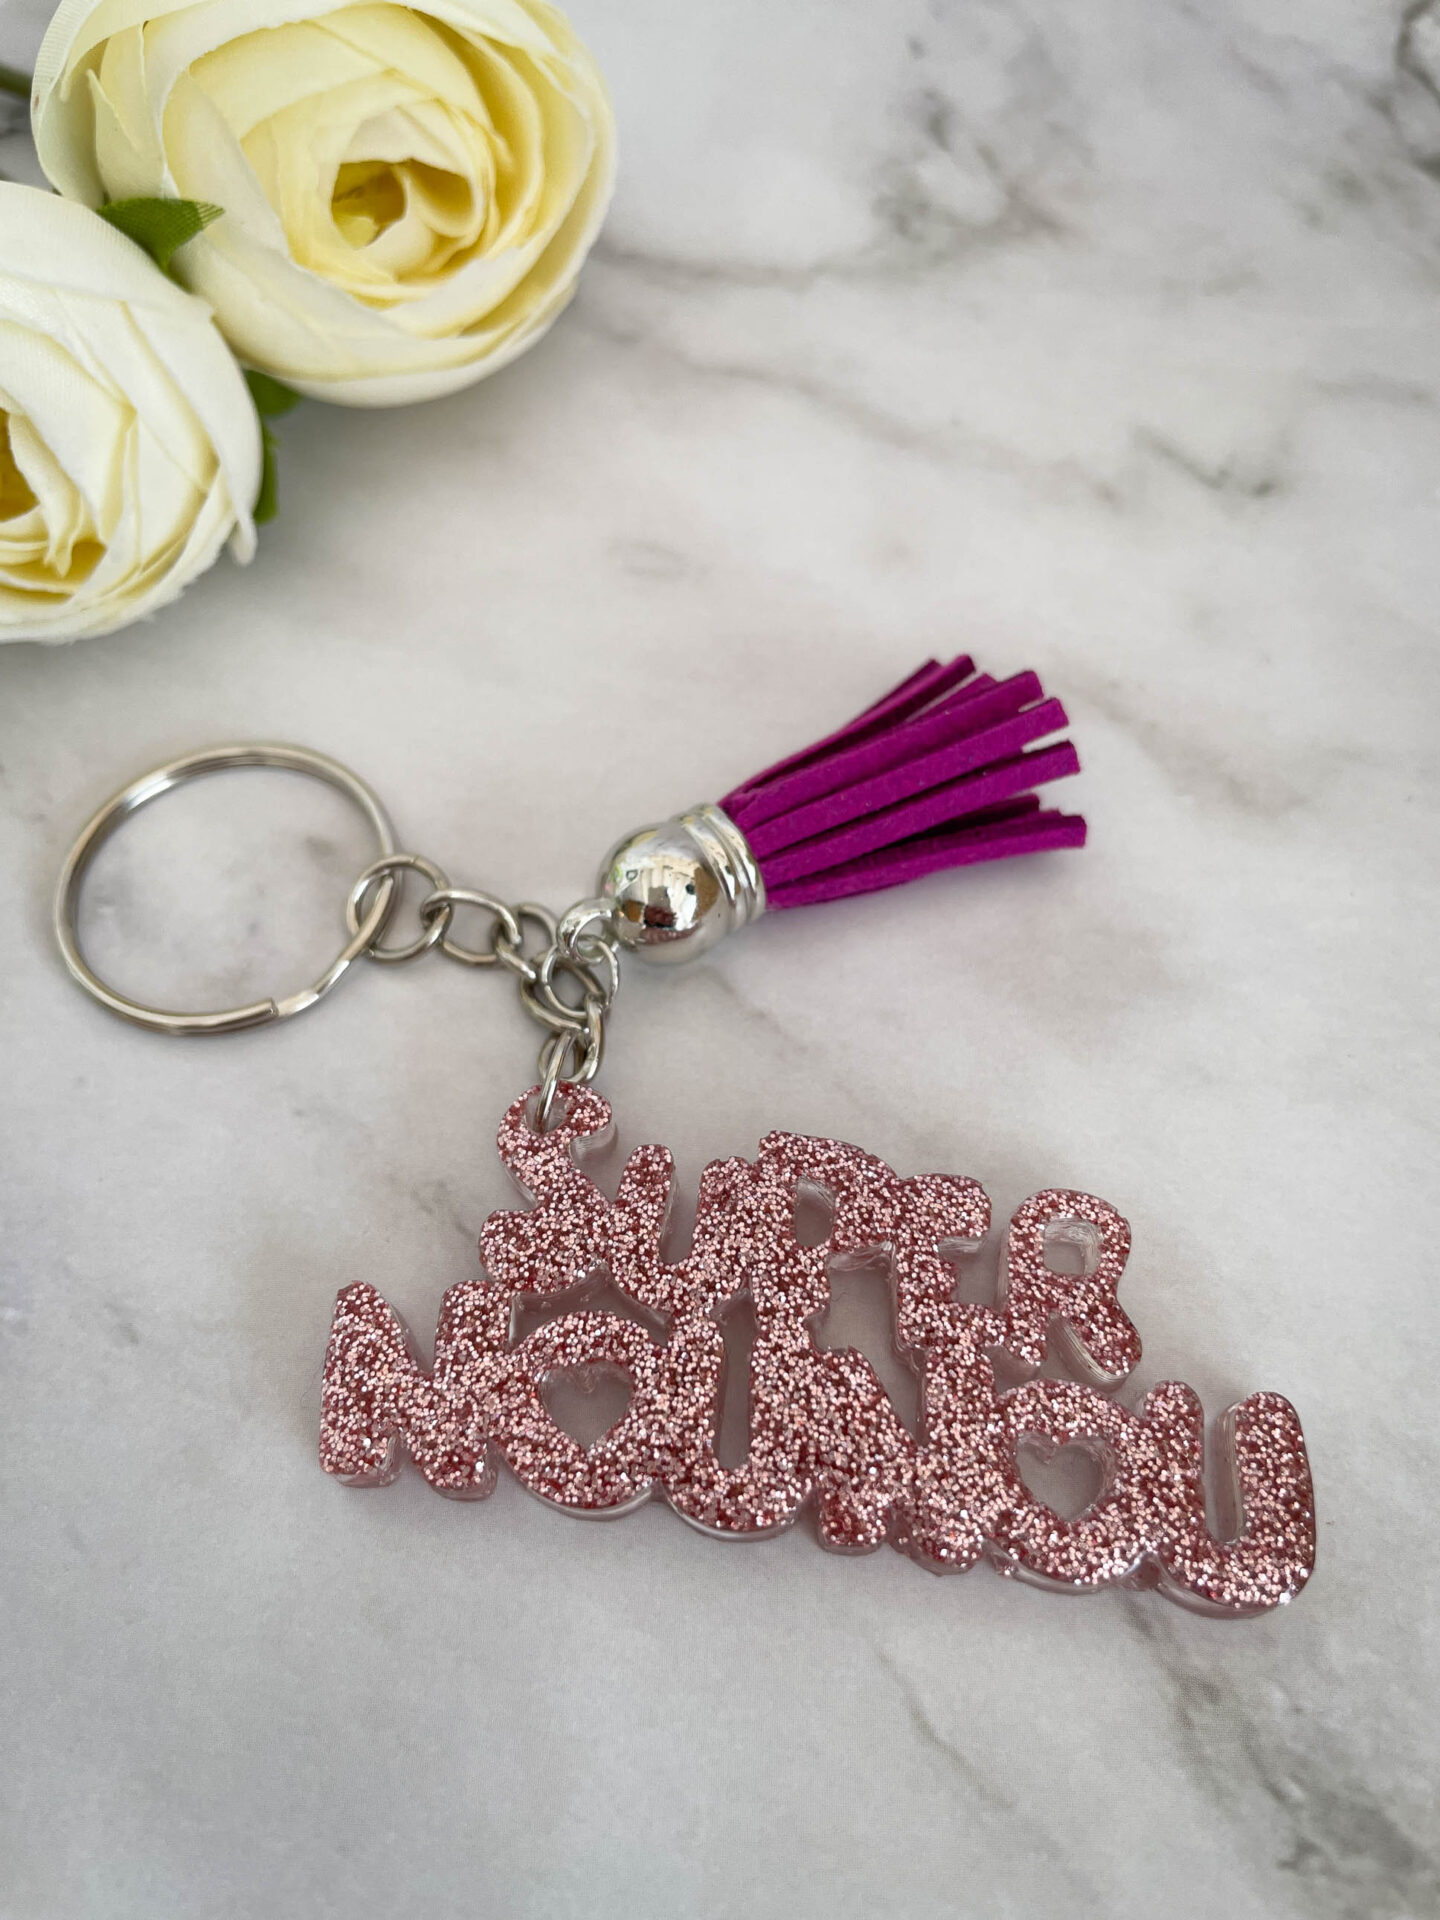 Porte clé mot - Super nounou rose paillette - Boutique en ligne d'idées cadeau et de décoration